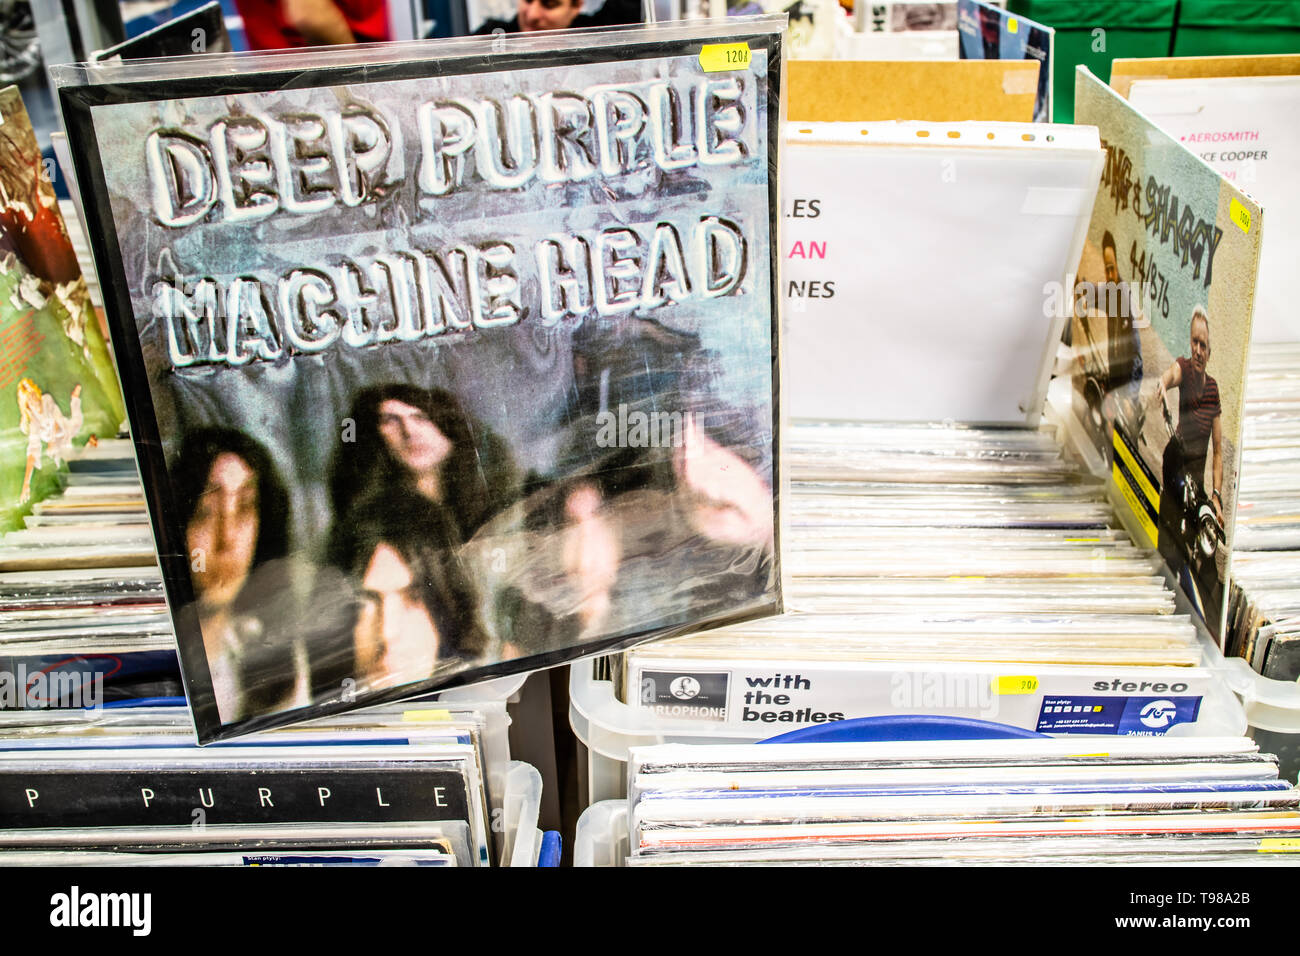 Nadarzyn, Polonia, 11 maggio 2019 Deep Purple album in vinile sul display per la vendita, vinile, LP, Album rock, inglese rock band, collezione di vinili Foto Stock